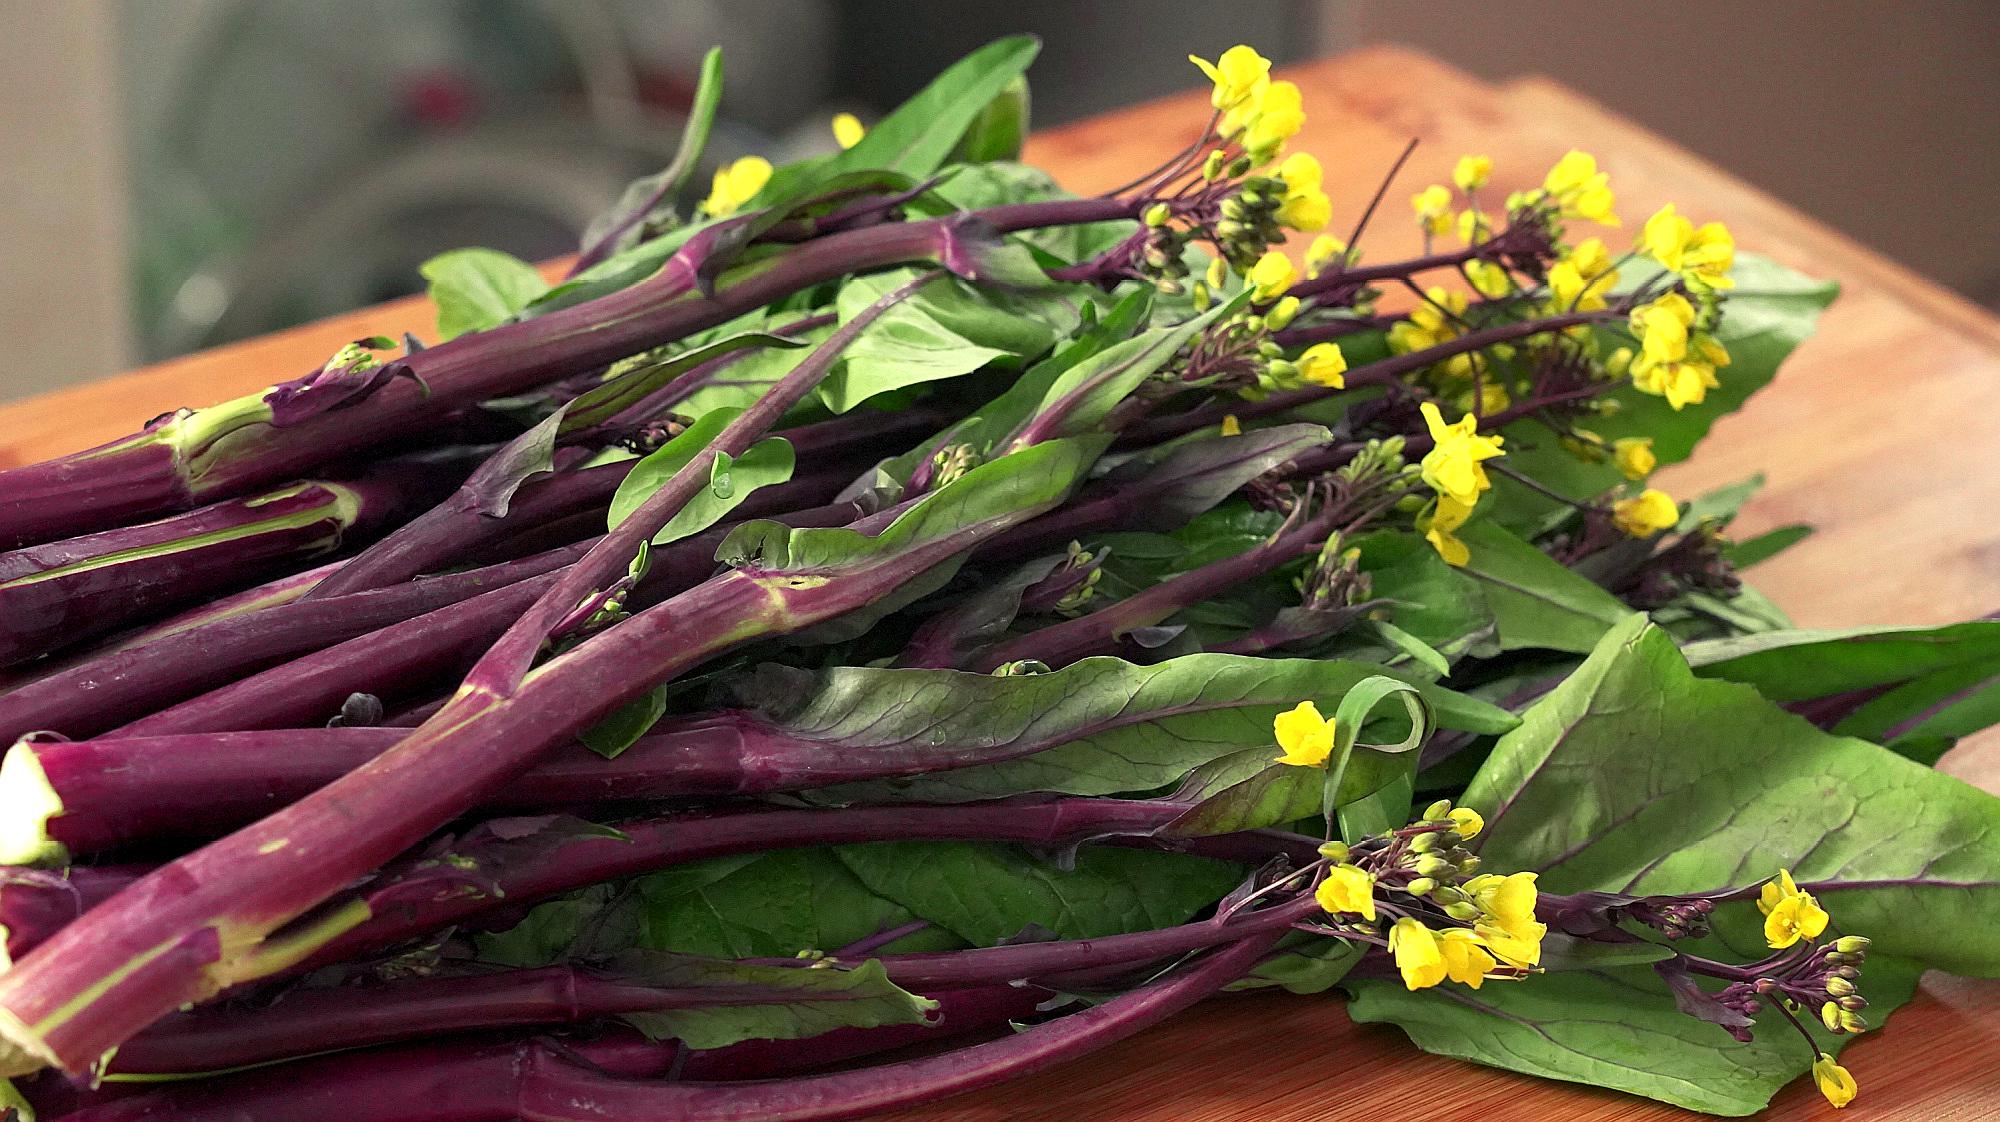 紫菜苔最经典的吃法,简单几步,清脆爽口又入味,上桌瞬间被扫光